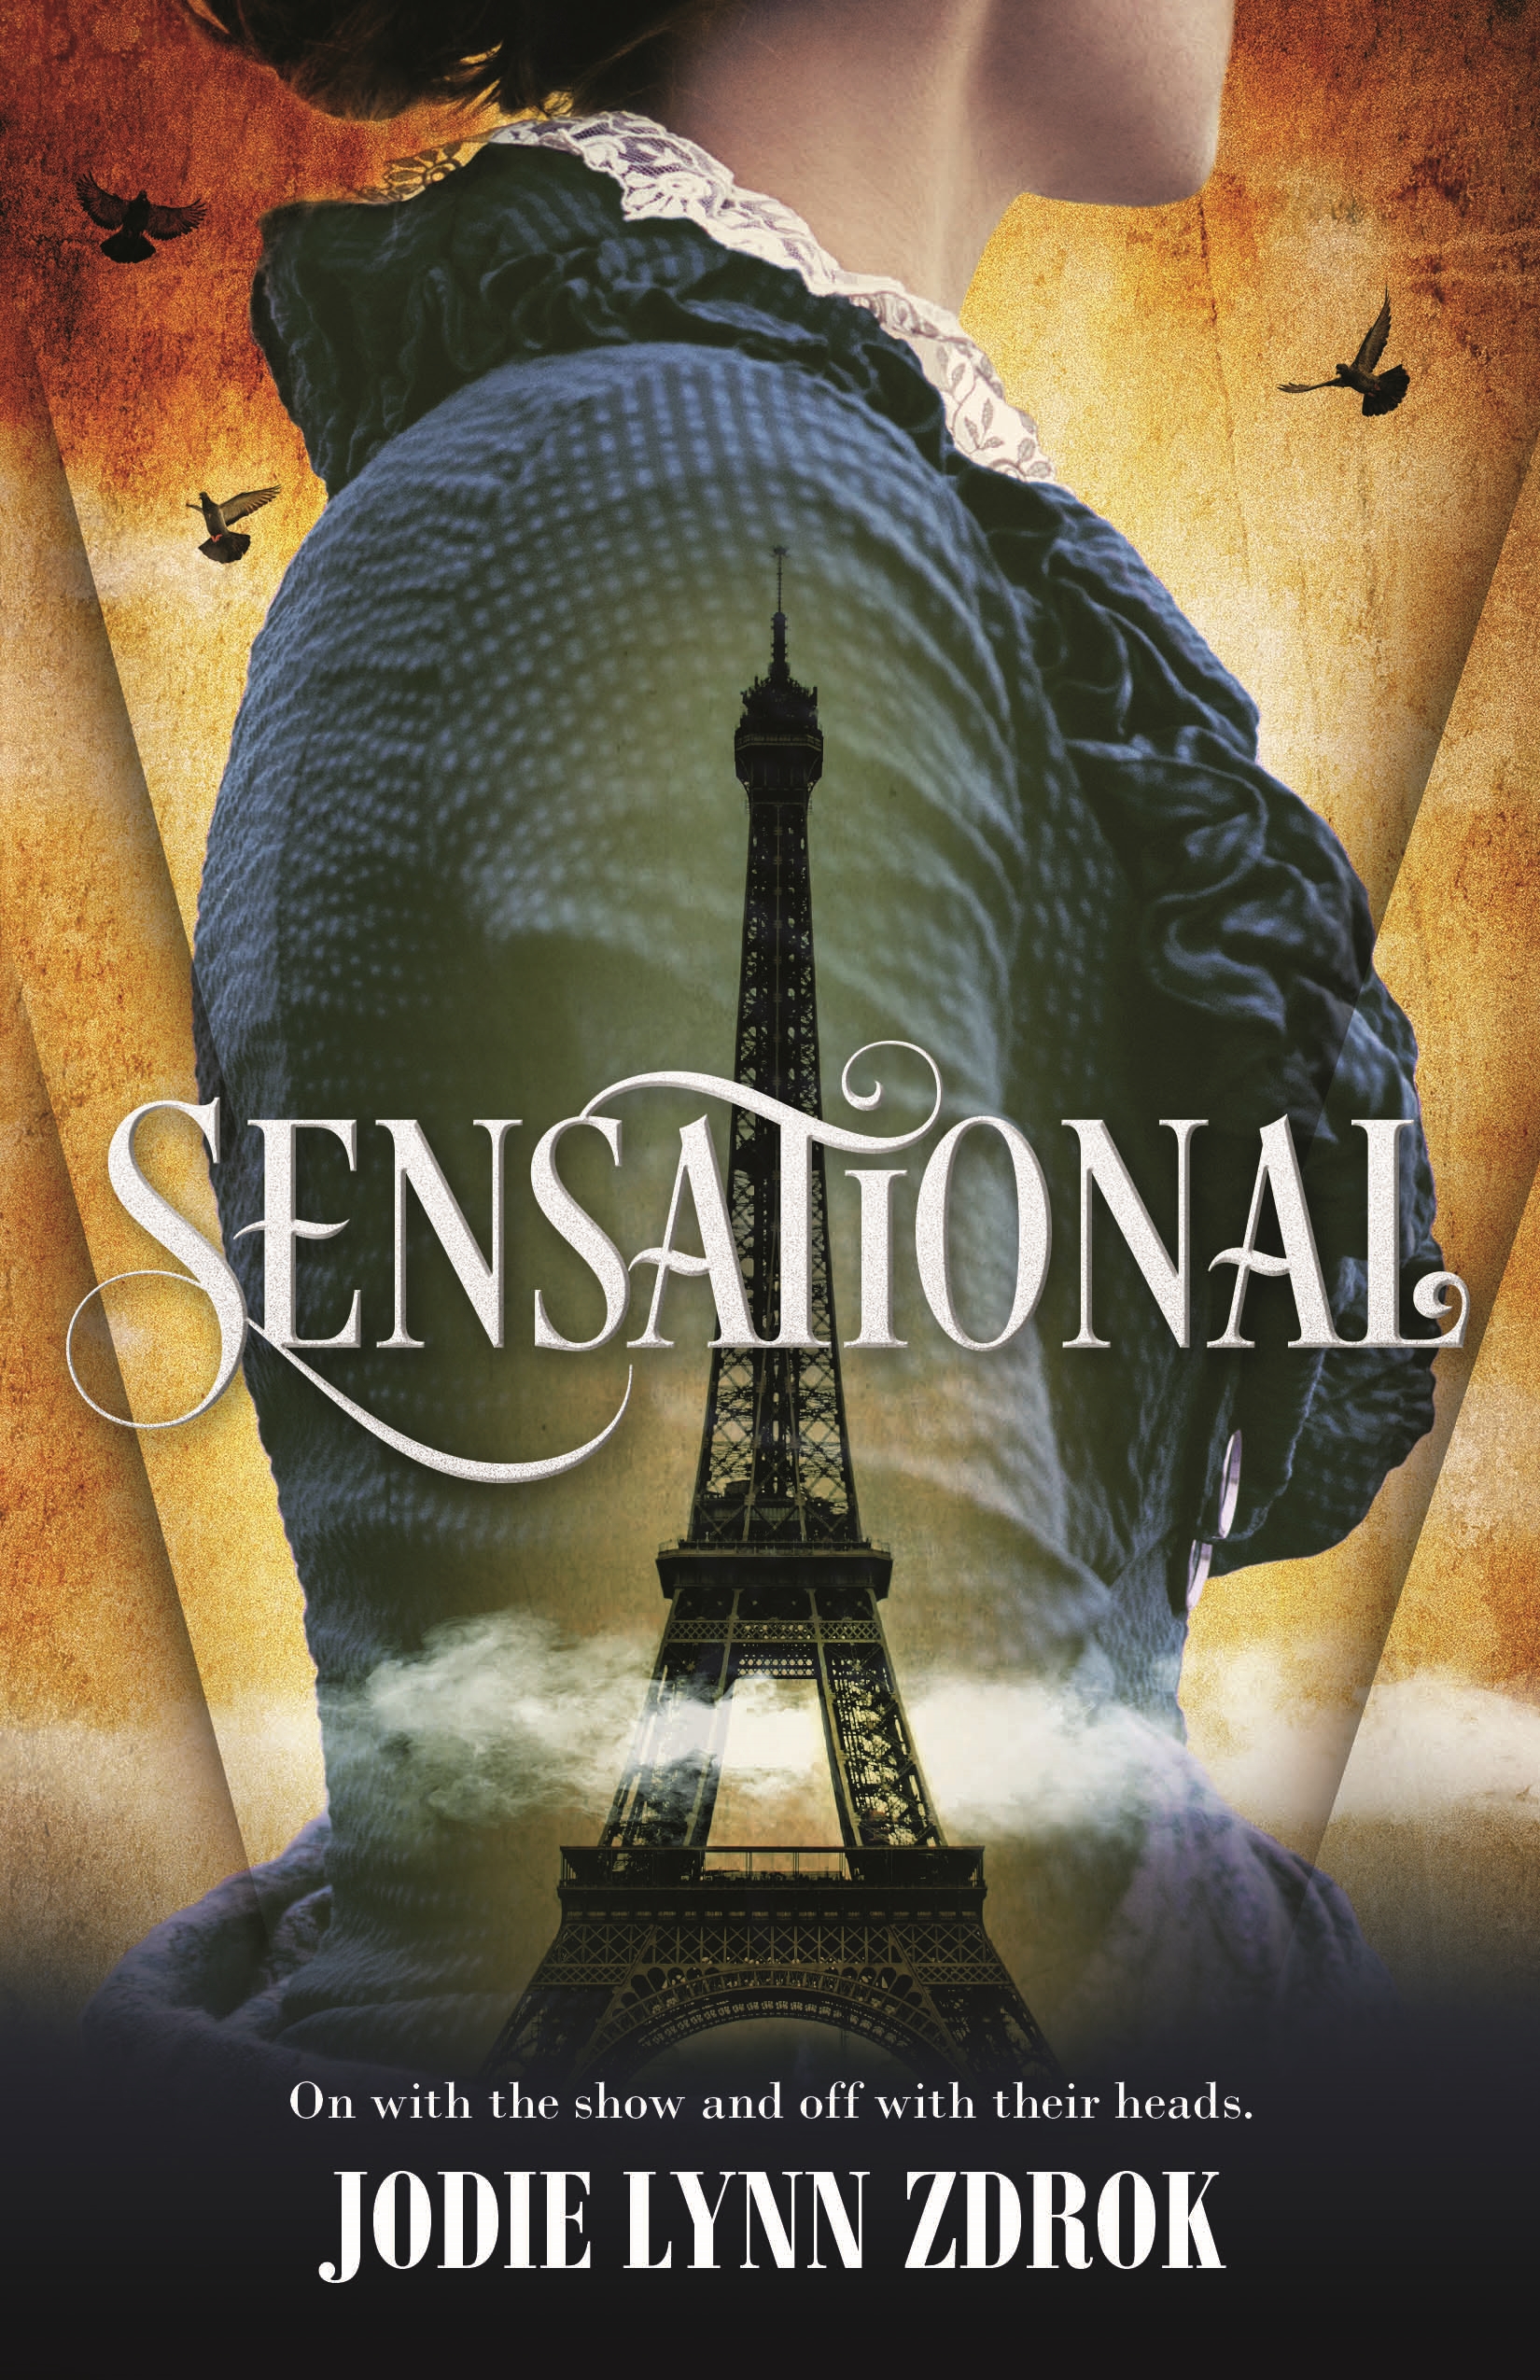 Sensational : A Historical Thriller in 19th Century Paris by Jodie Lynn Zdrok